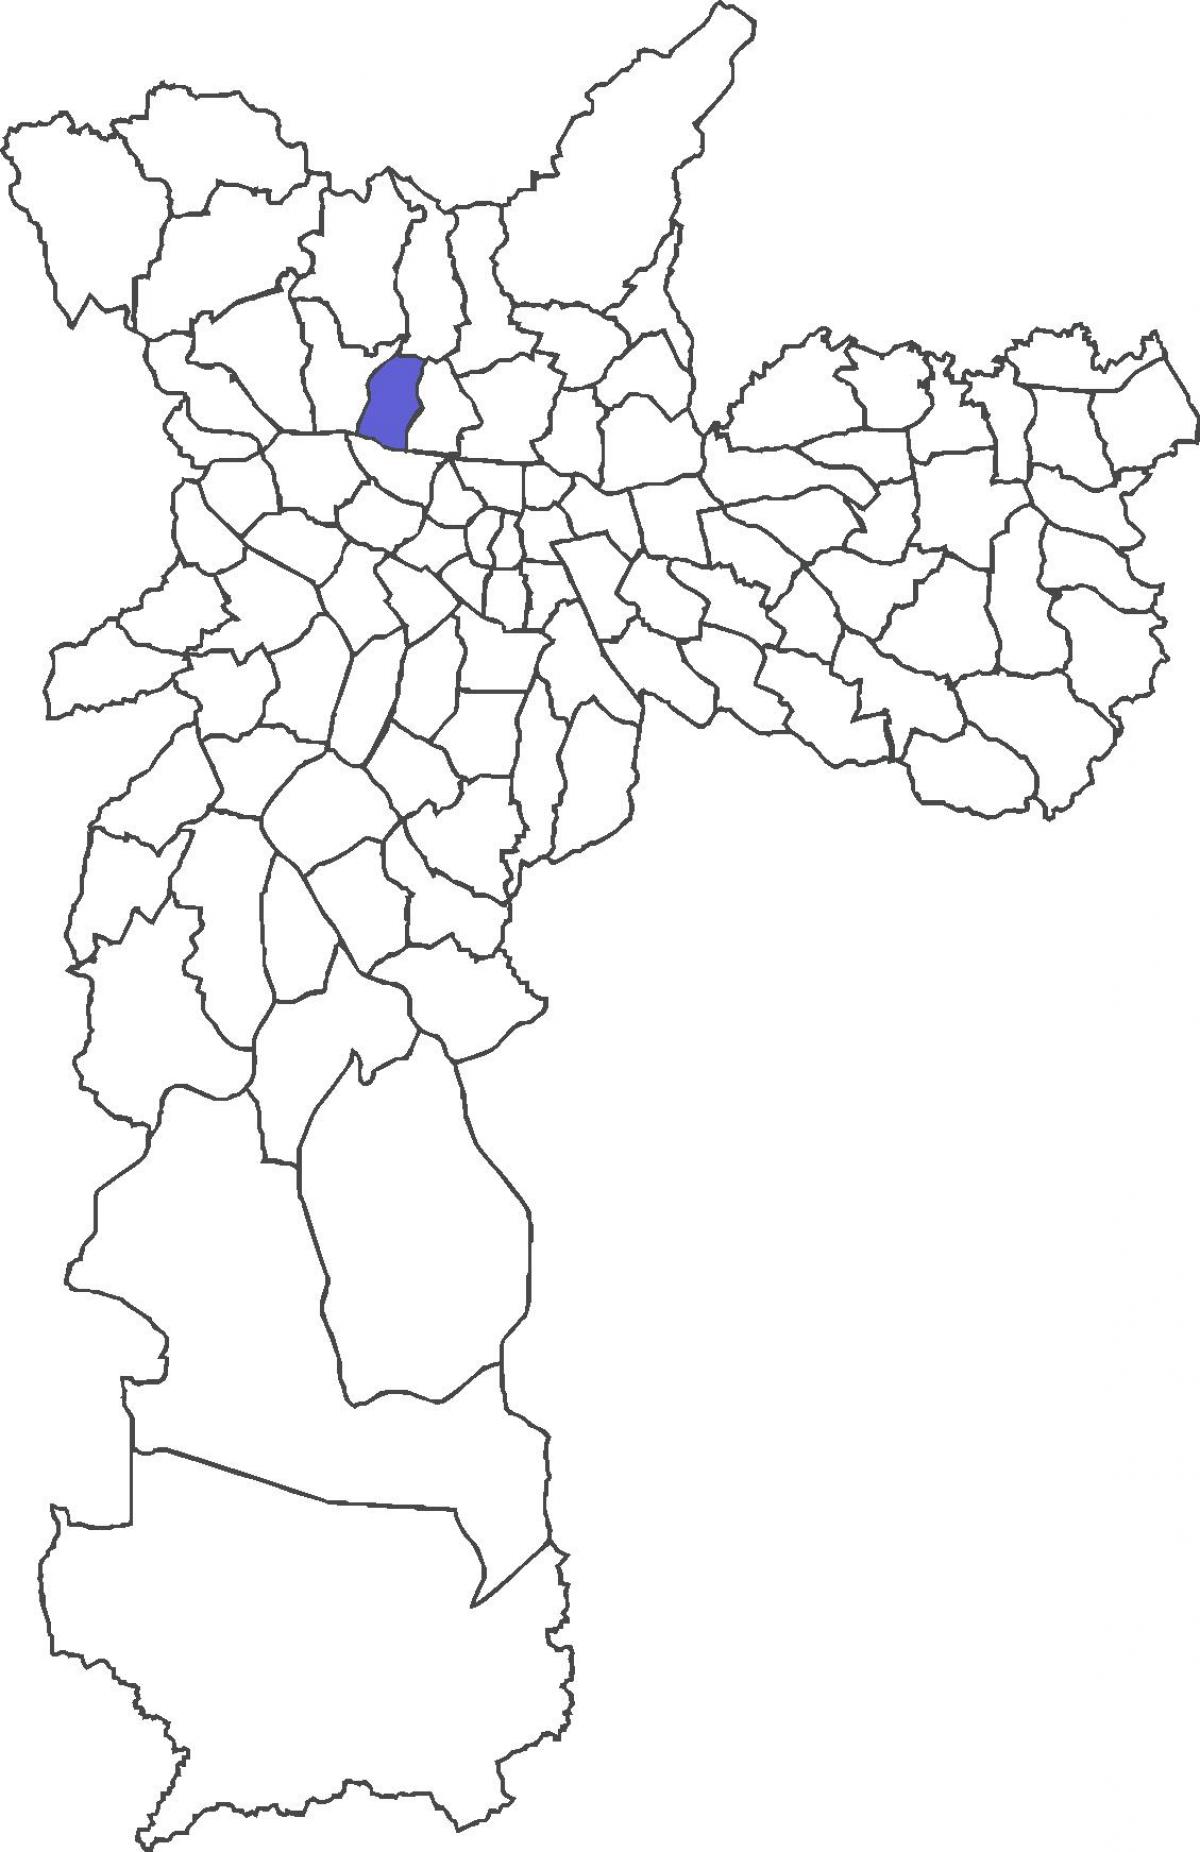 মানচিত্র Limão জেলা